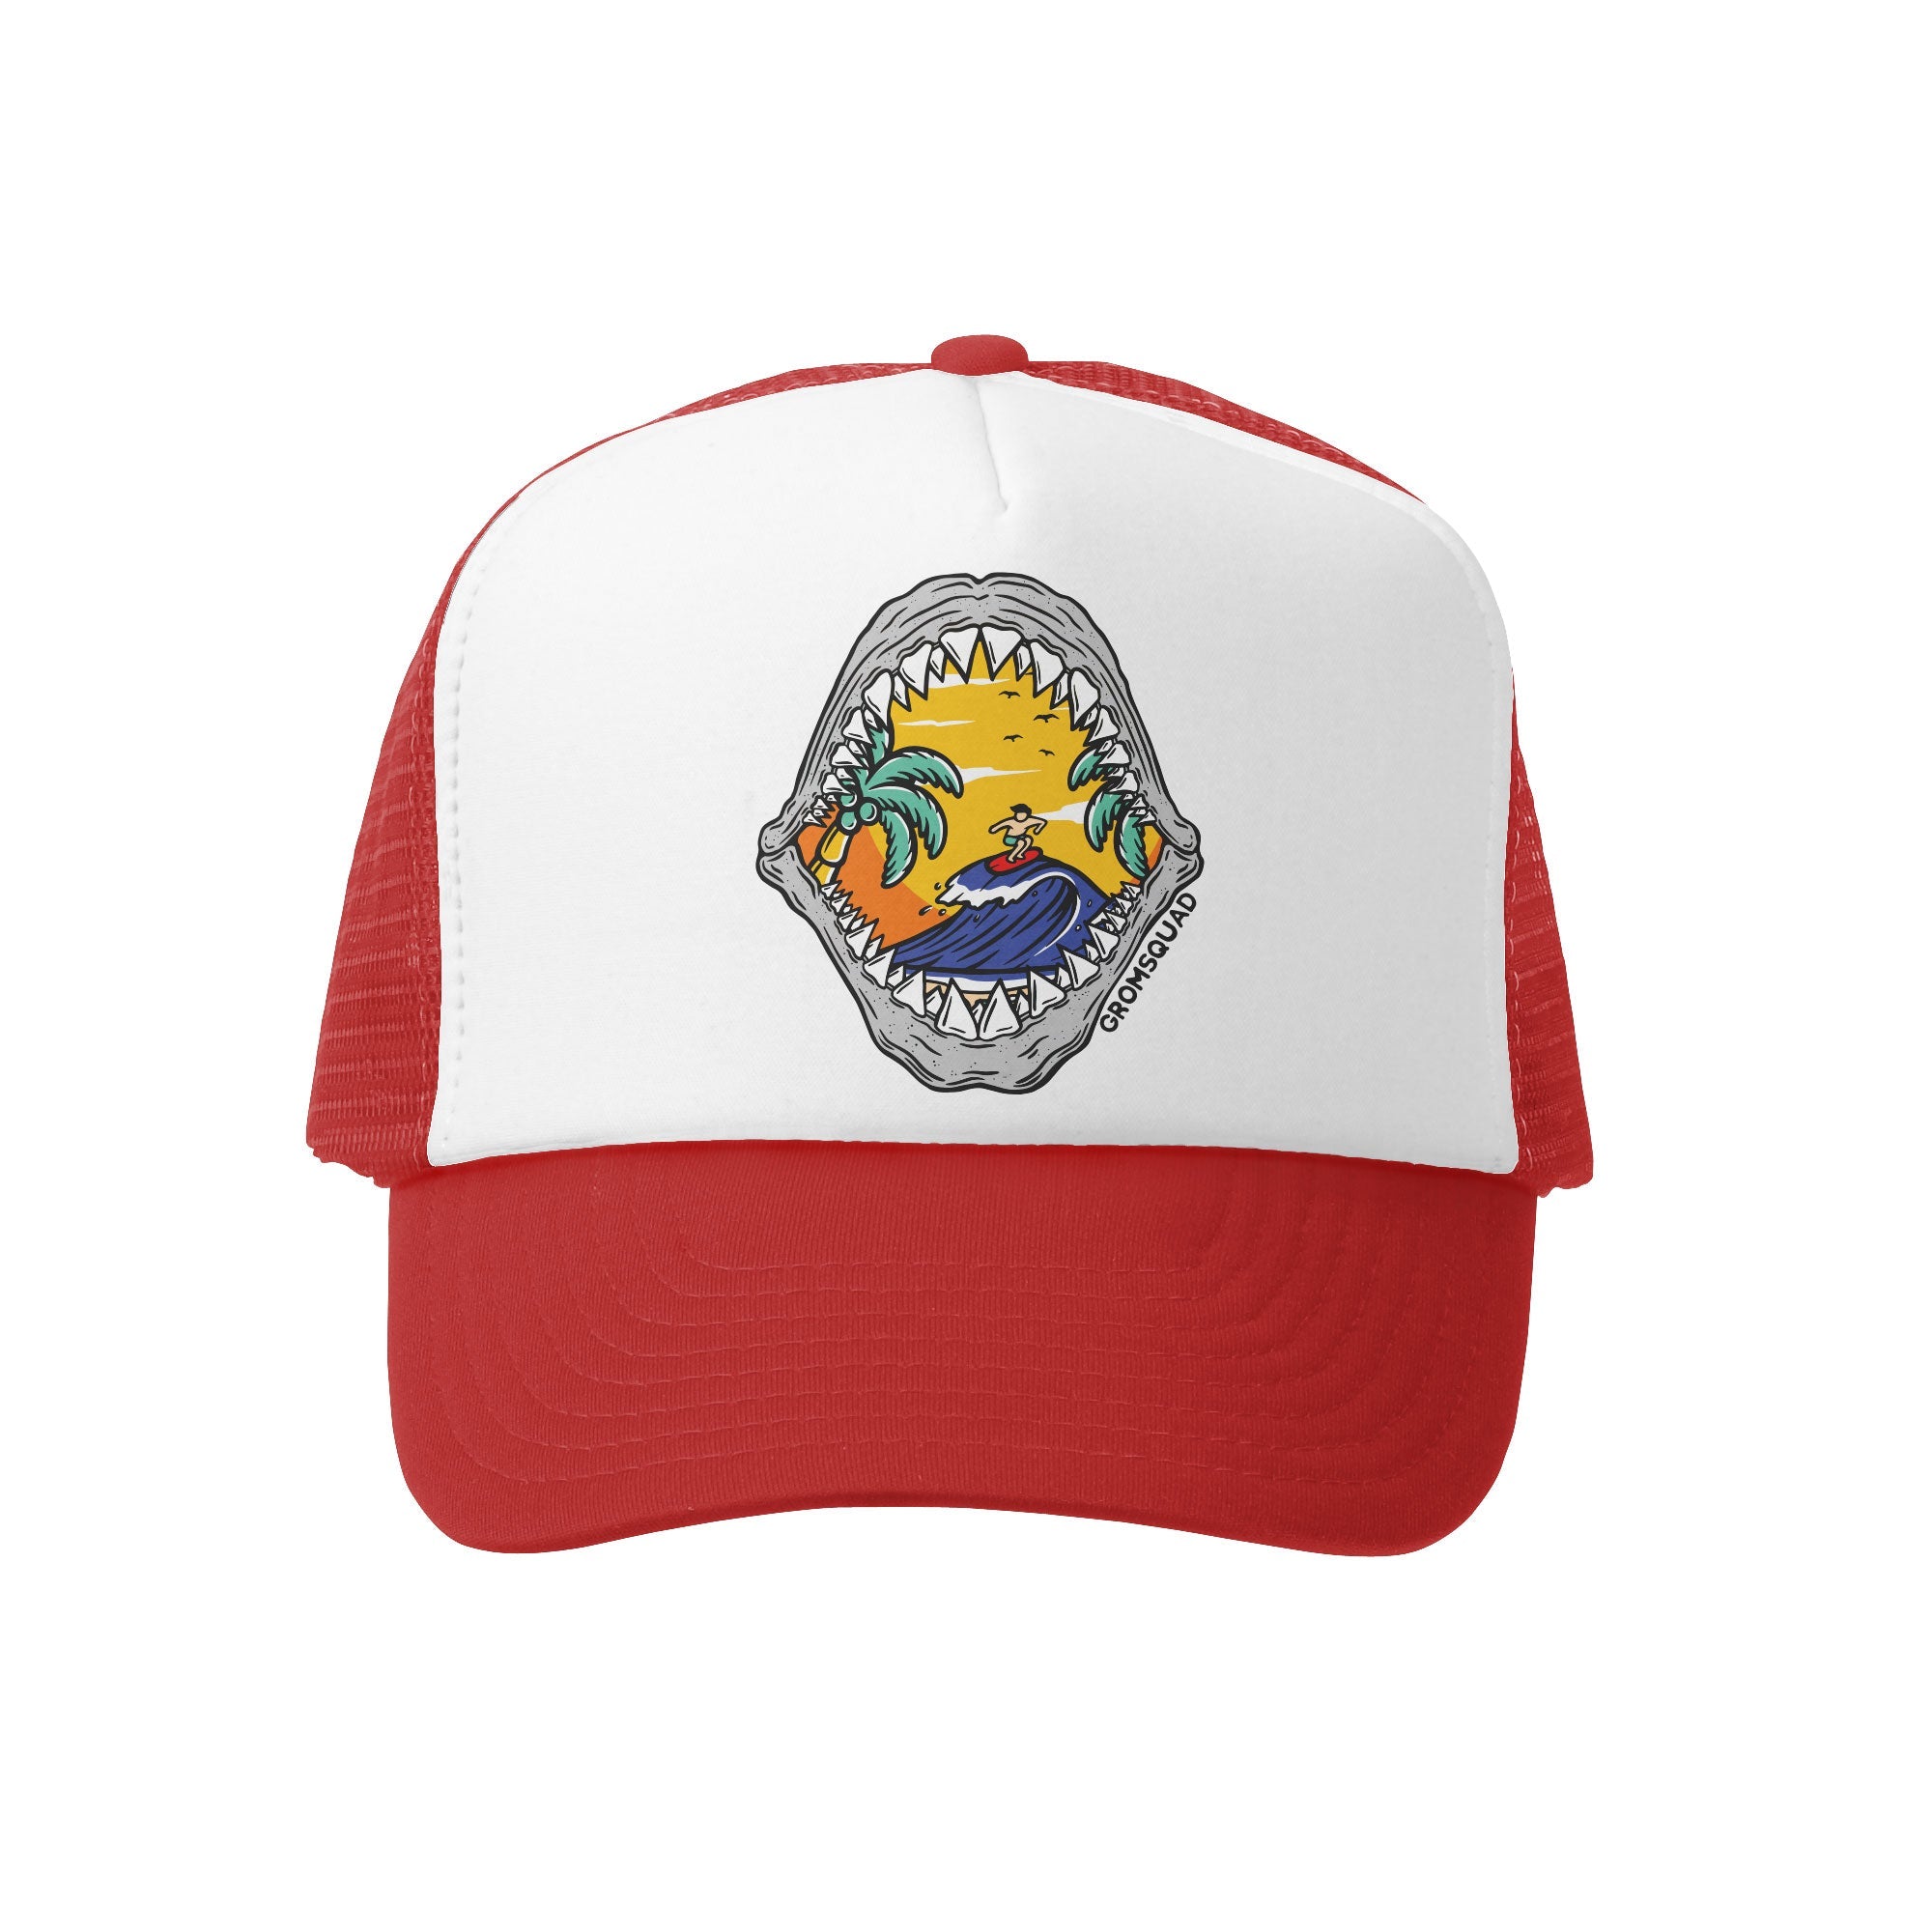 Grom Squad Shark Bite Trucker Hat Red/White Super